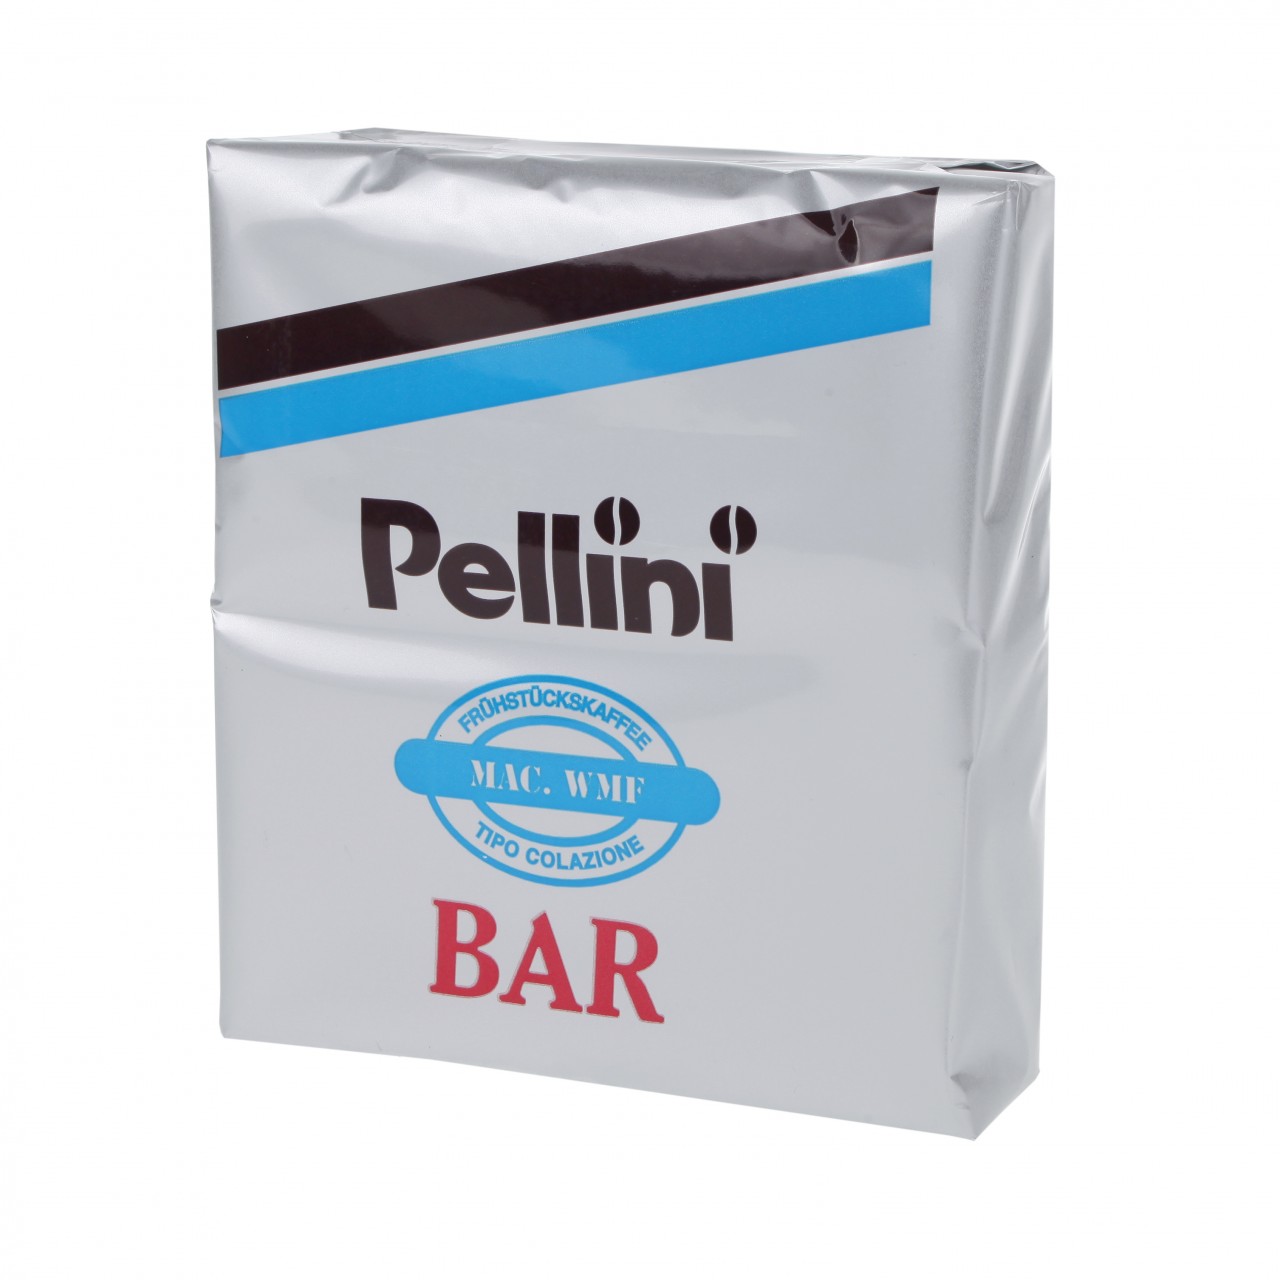 Pellini Breakfast Coffee